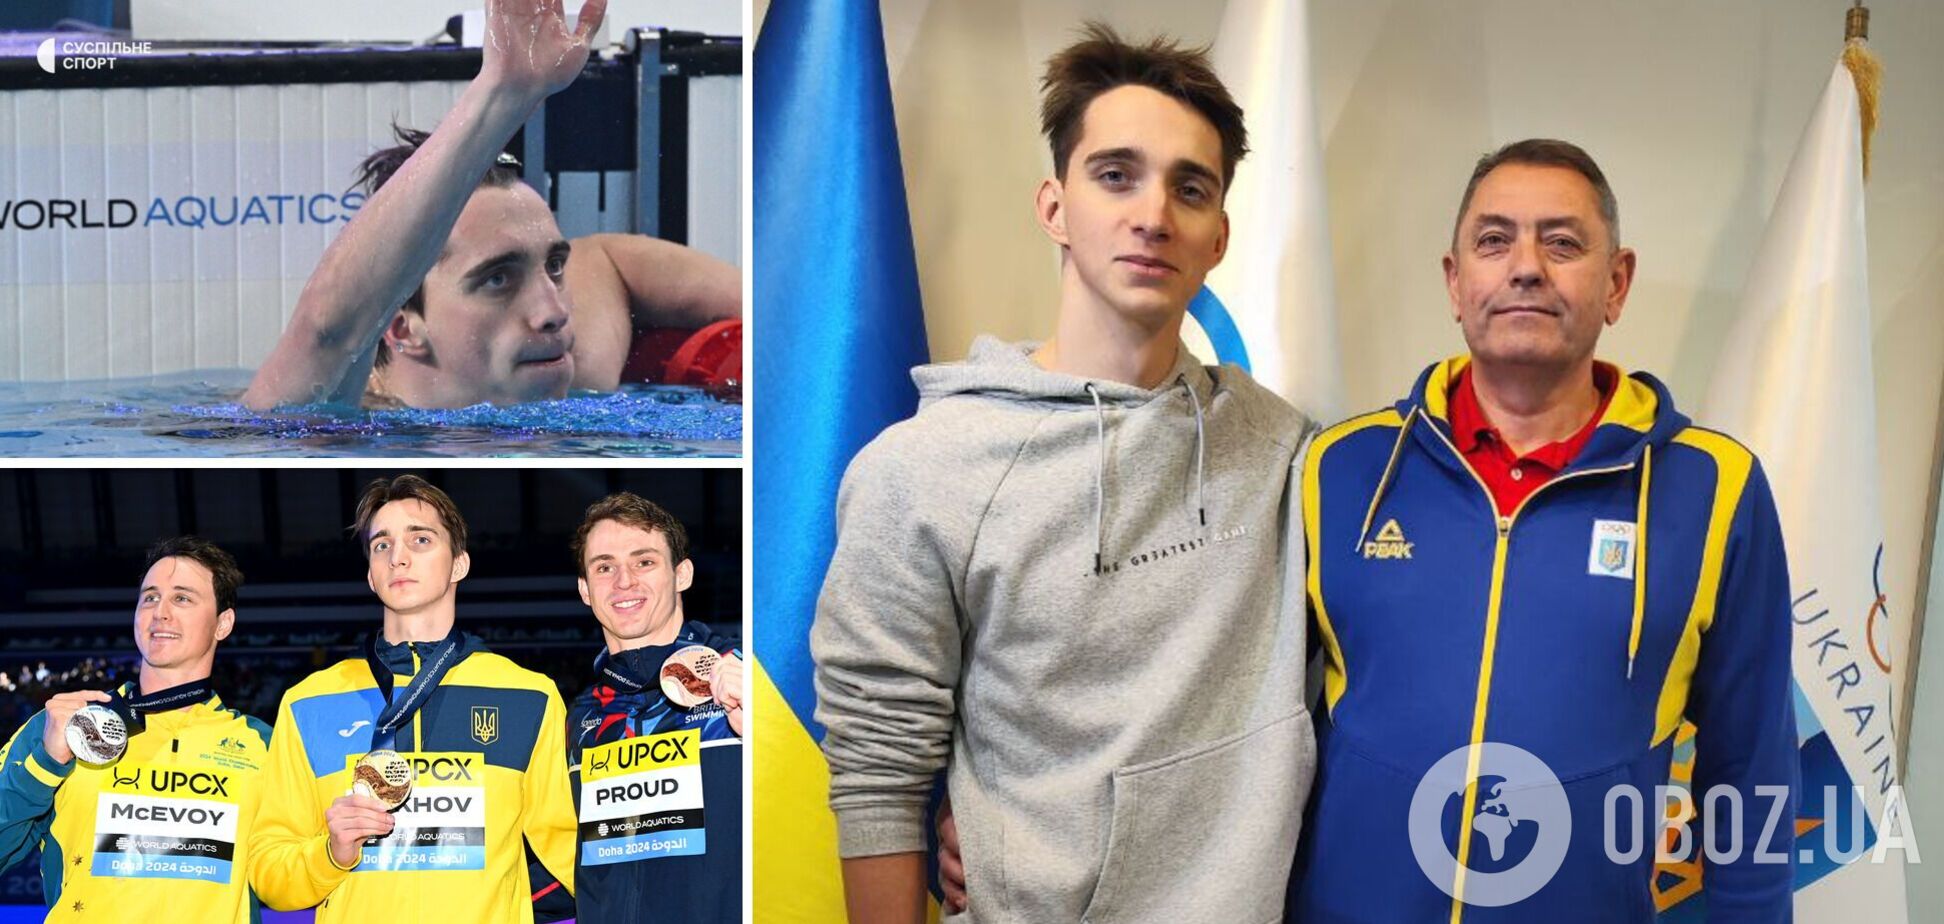 'Все хотели посмотреть на парня из Украины': тренер сенсационного чемпиона мира рассказал о шоке австралийцев и квартире для победителя